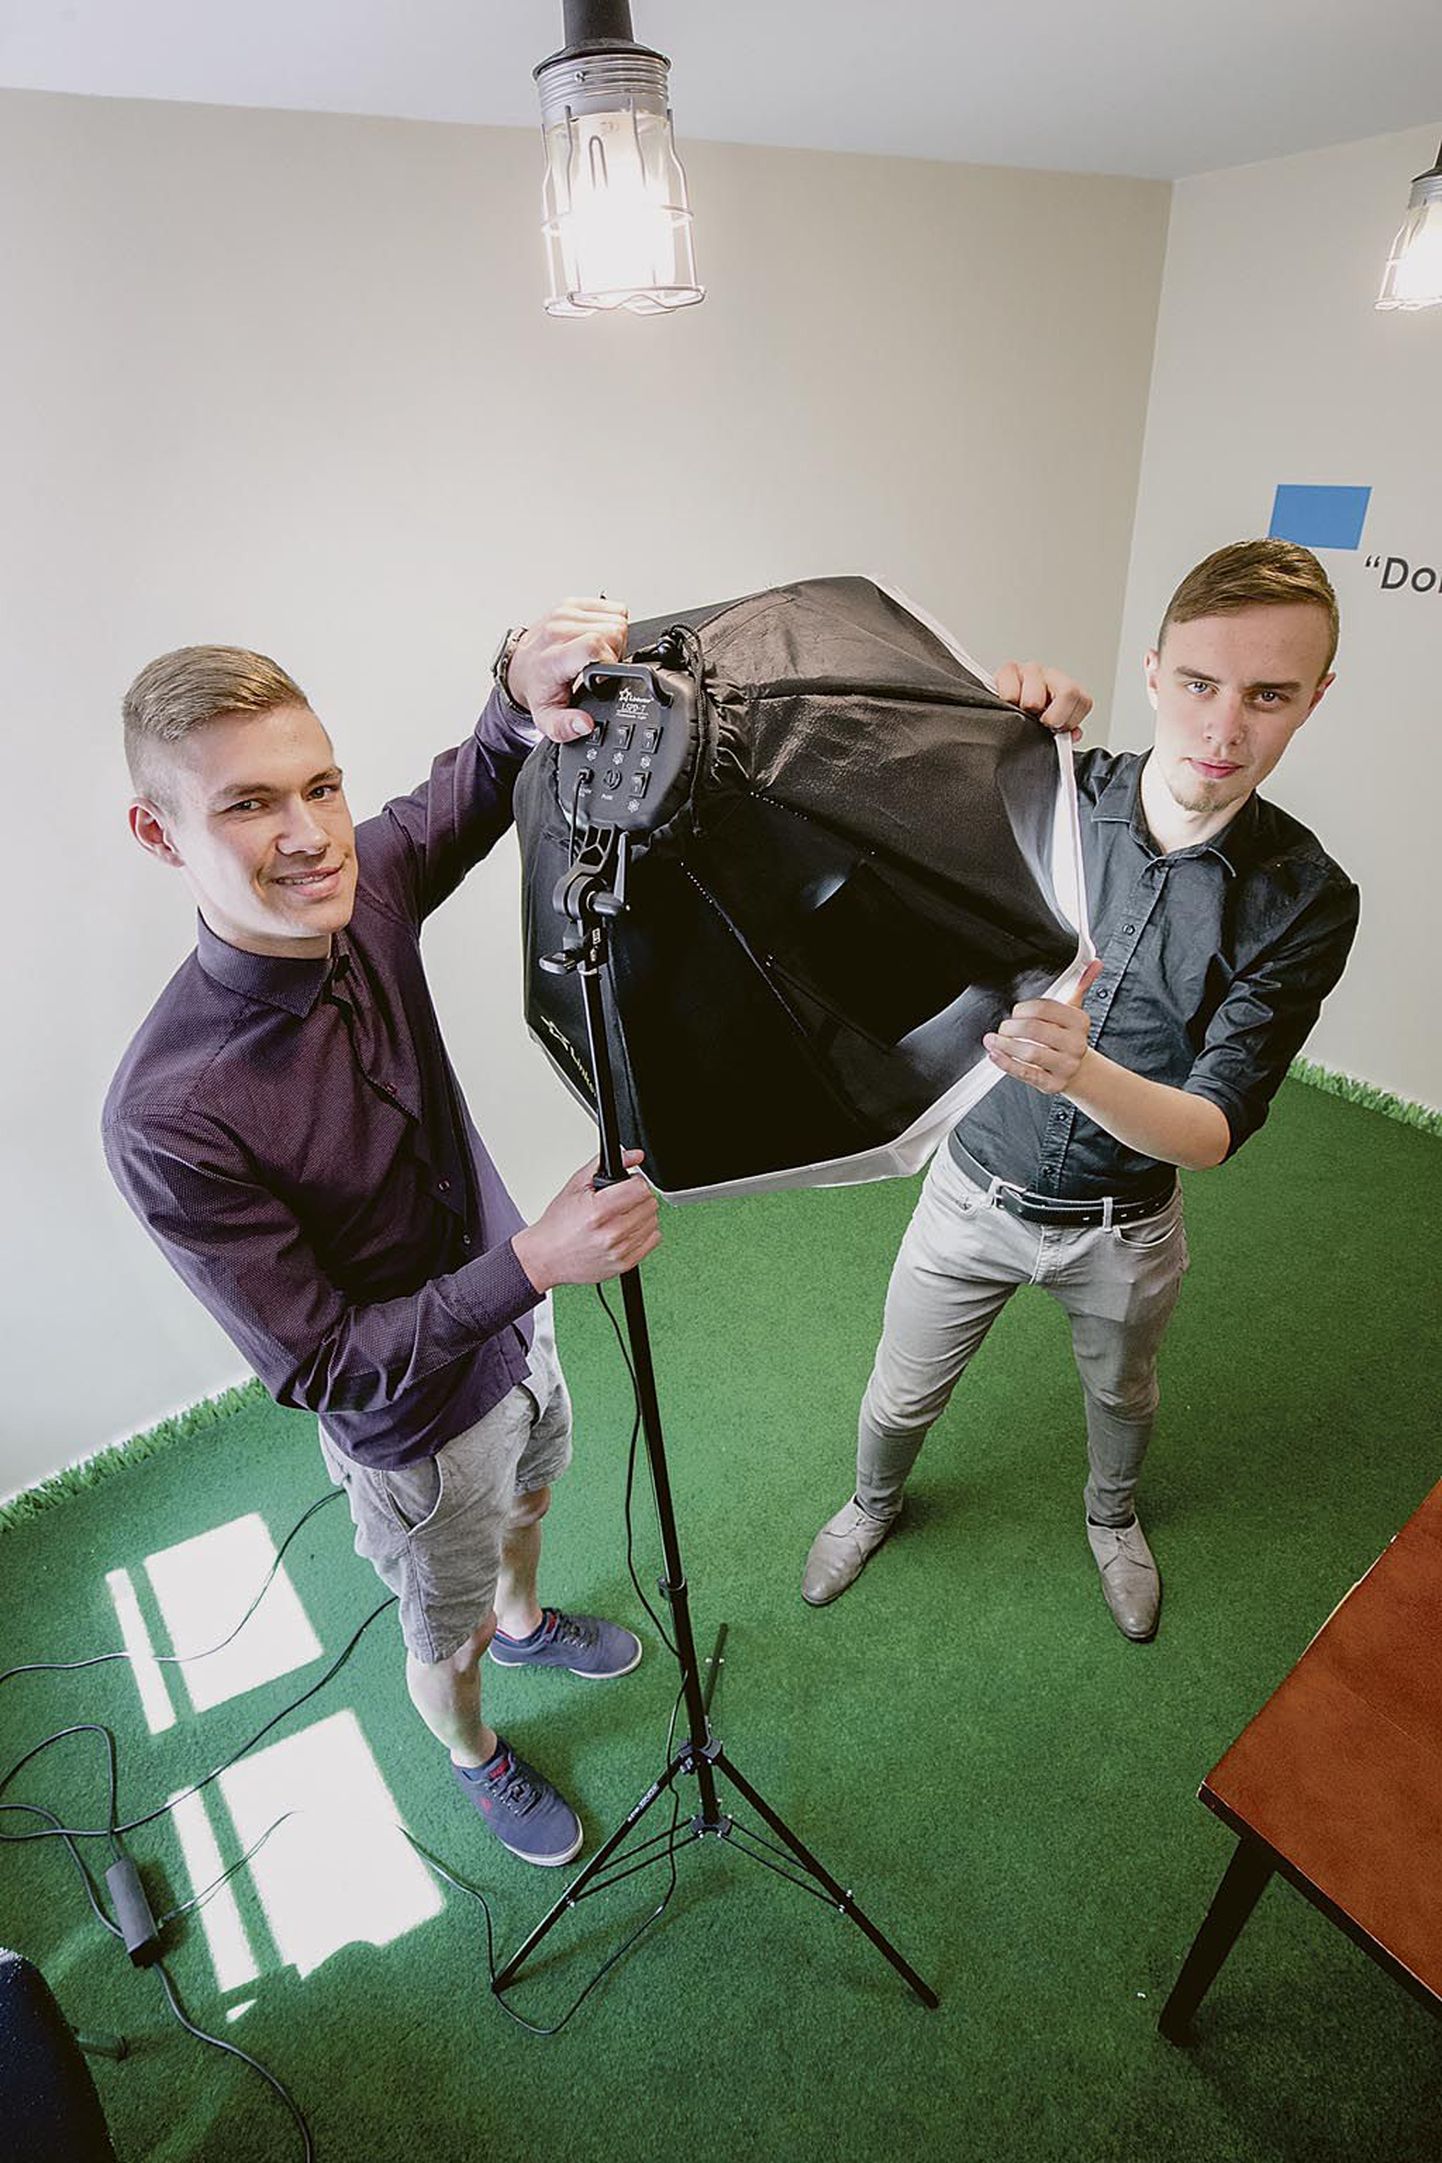 Noored ettevõtjad Andrin Ratiste (vasakul) ja Silvar Stern arendavad uudset teenust: pealinna kinnisvara uusarendustele 3D-animatsioonide tegemist, mis on Eestis alles lapsekingades.